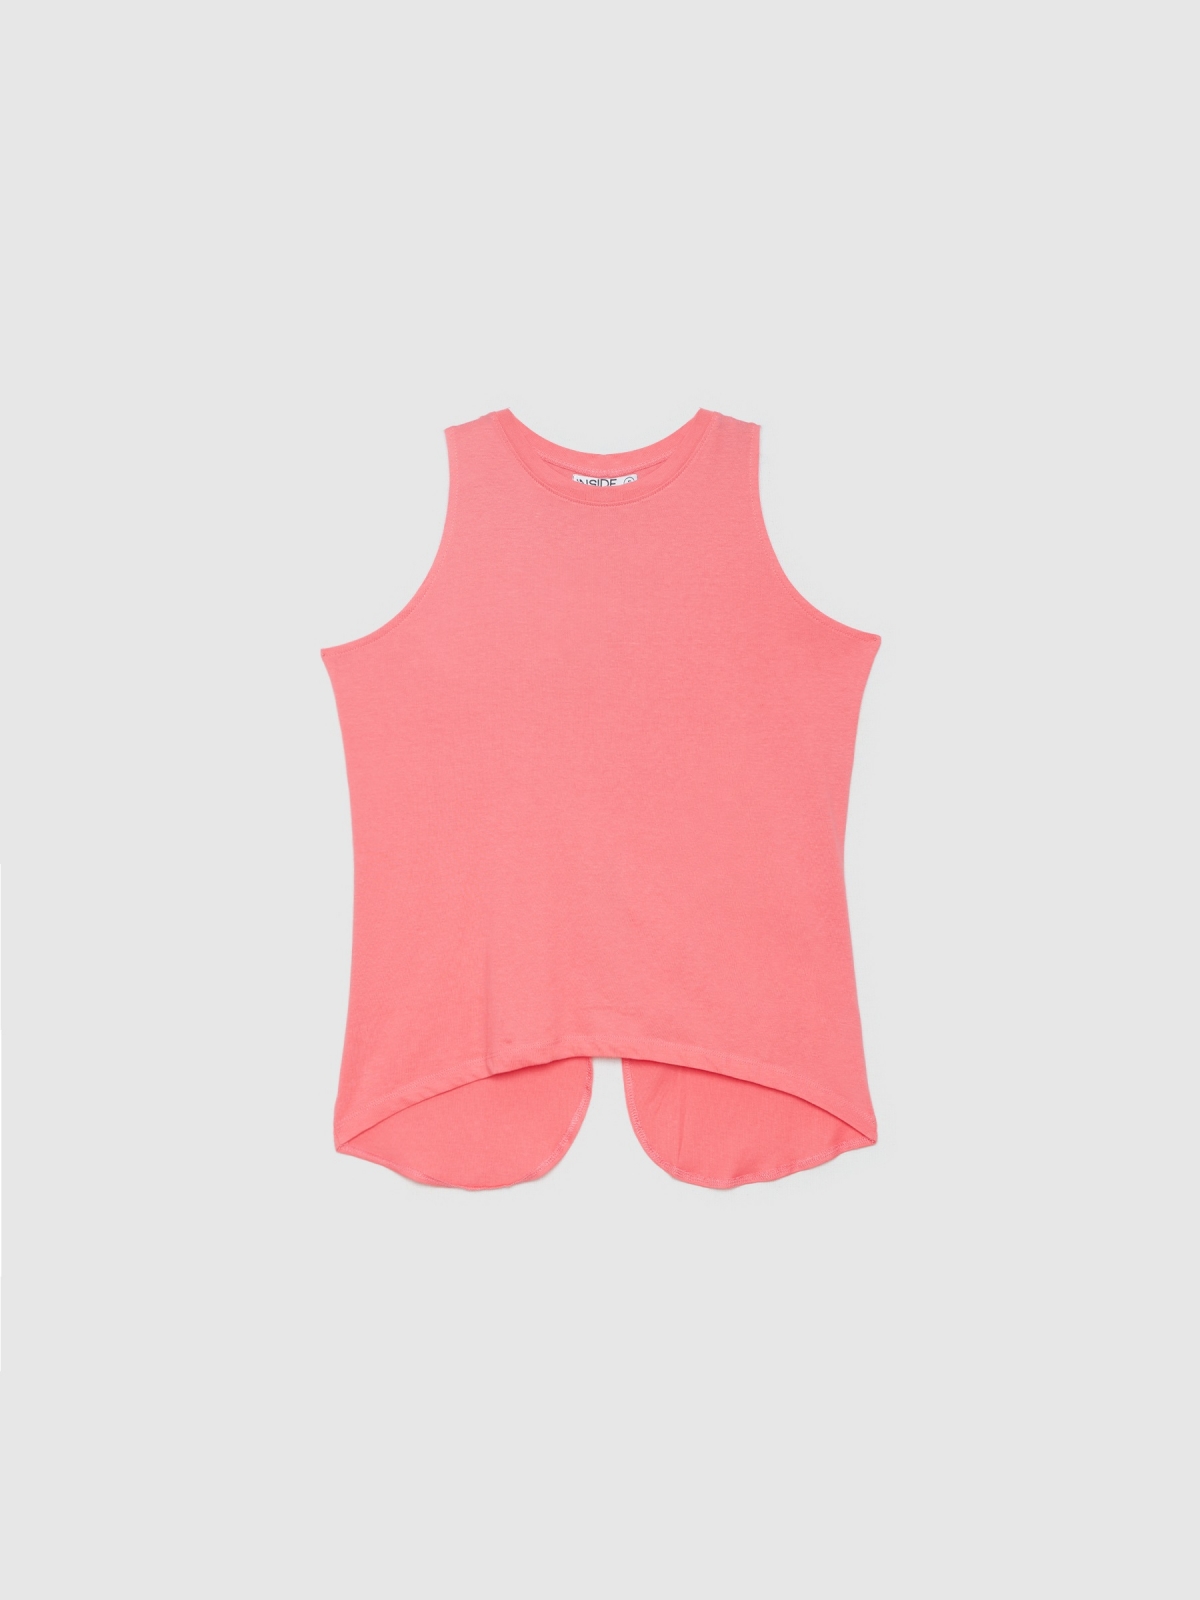  Camiseta abertura espalda rosa